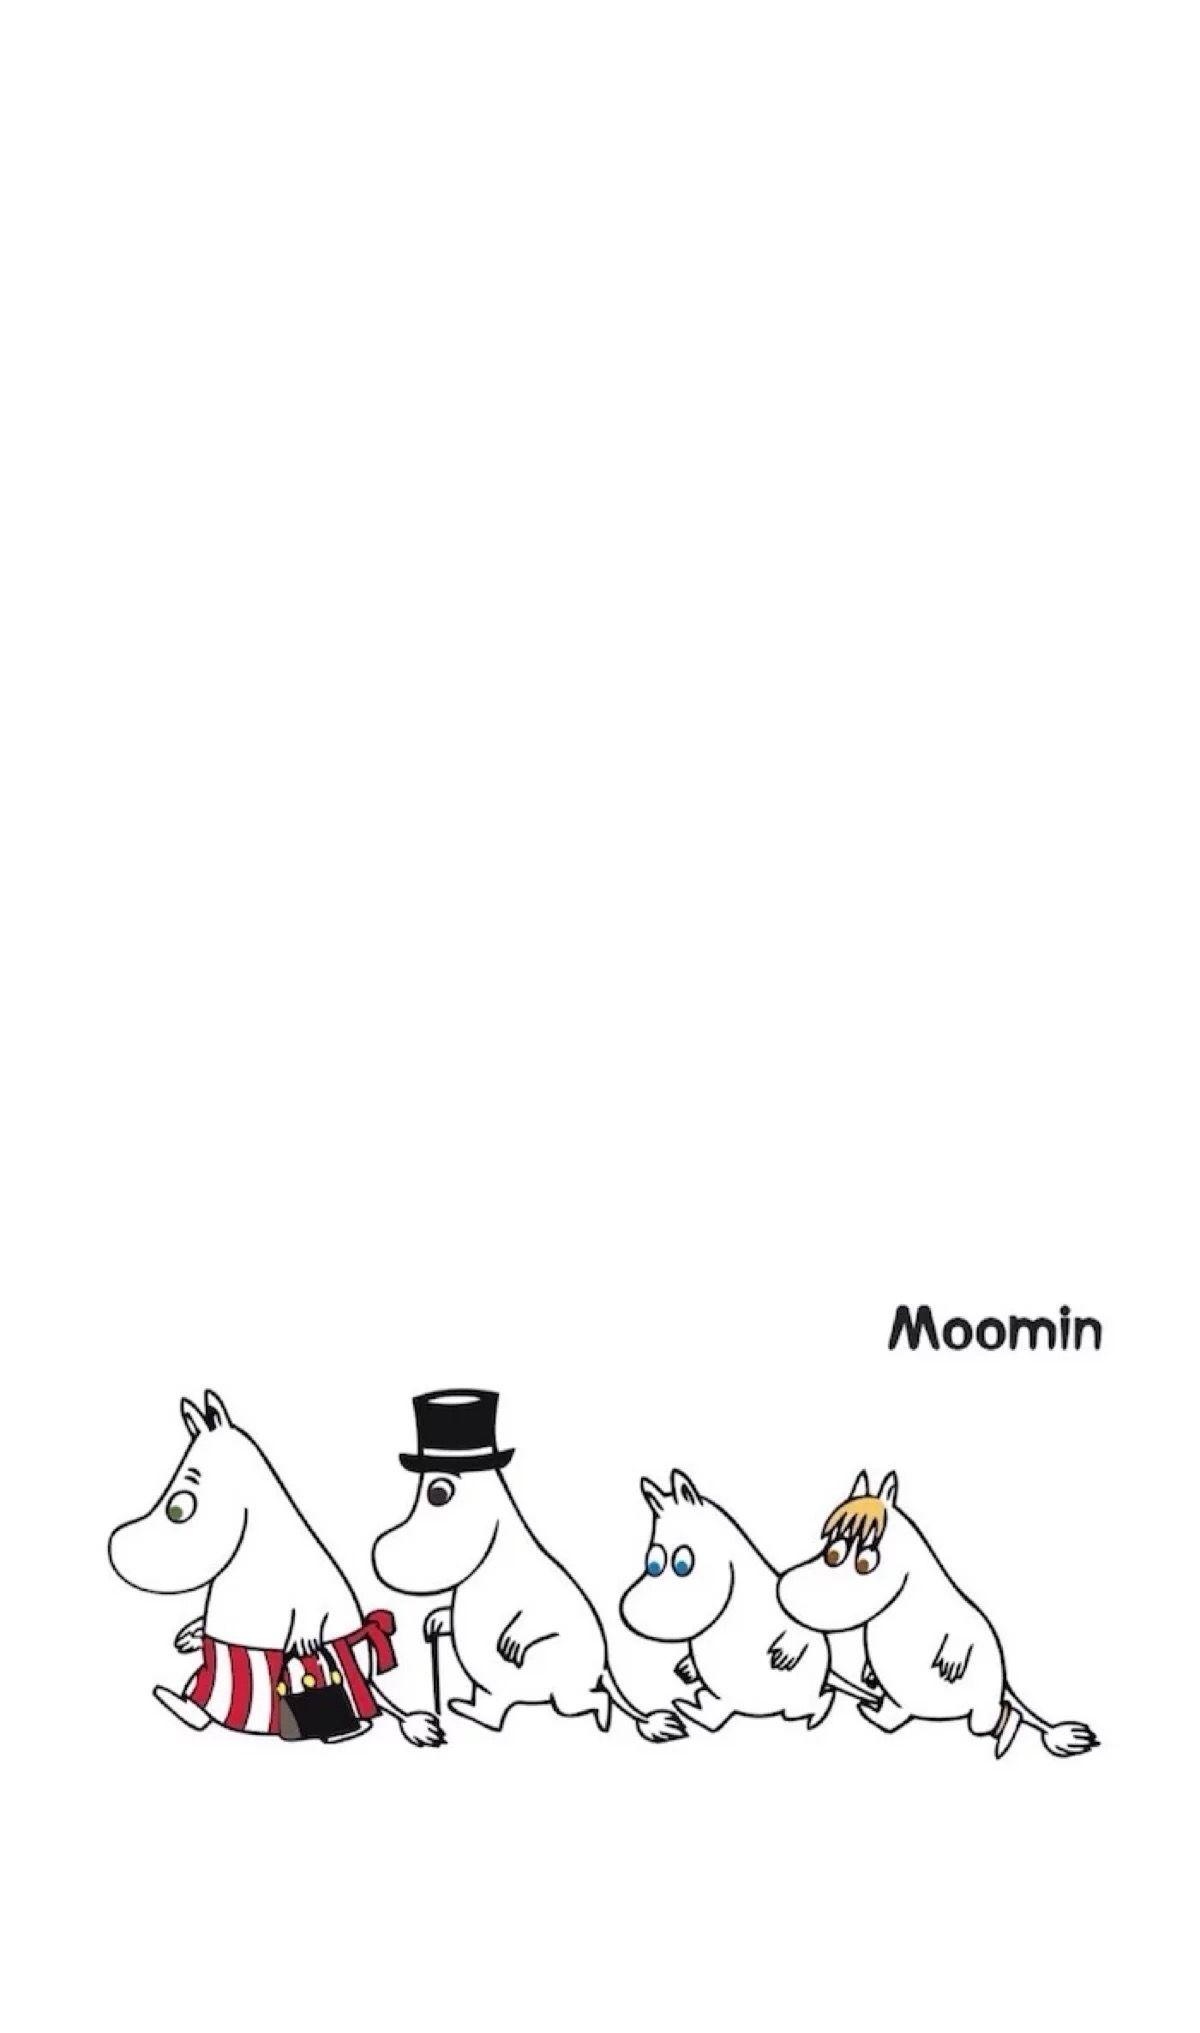 Moomin: Moominmamma, Moominpapa, Moomintroll. 1200x2040 HD Background.